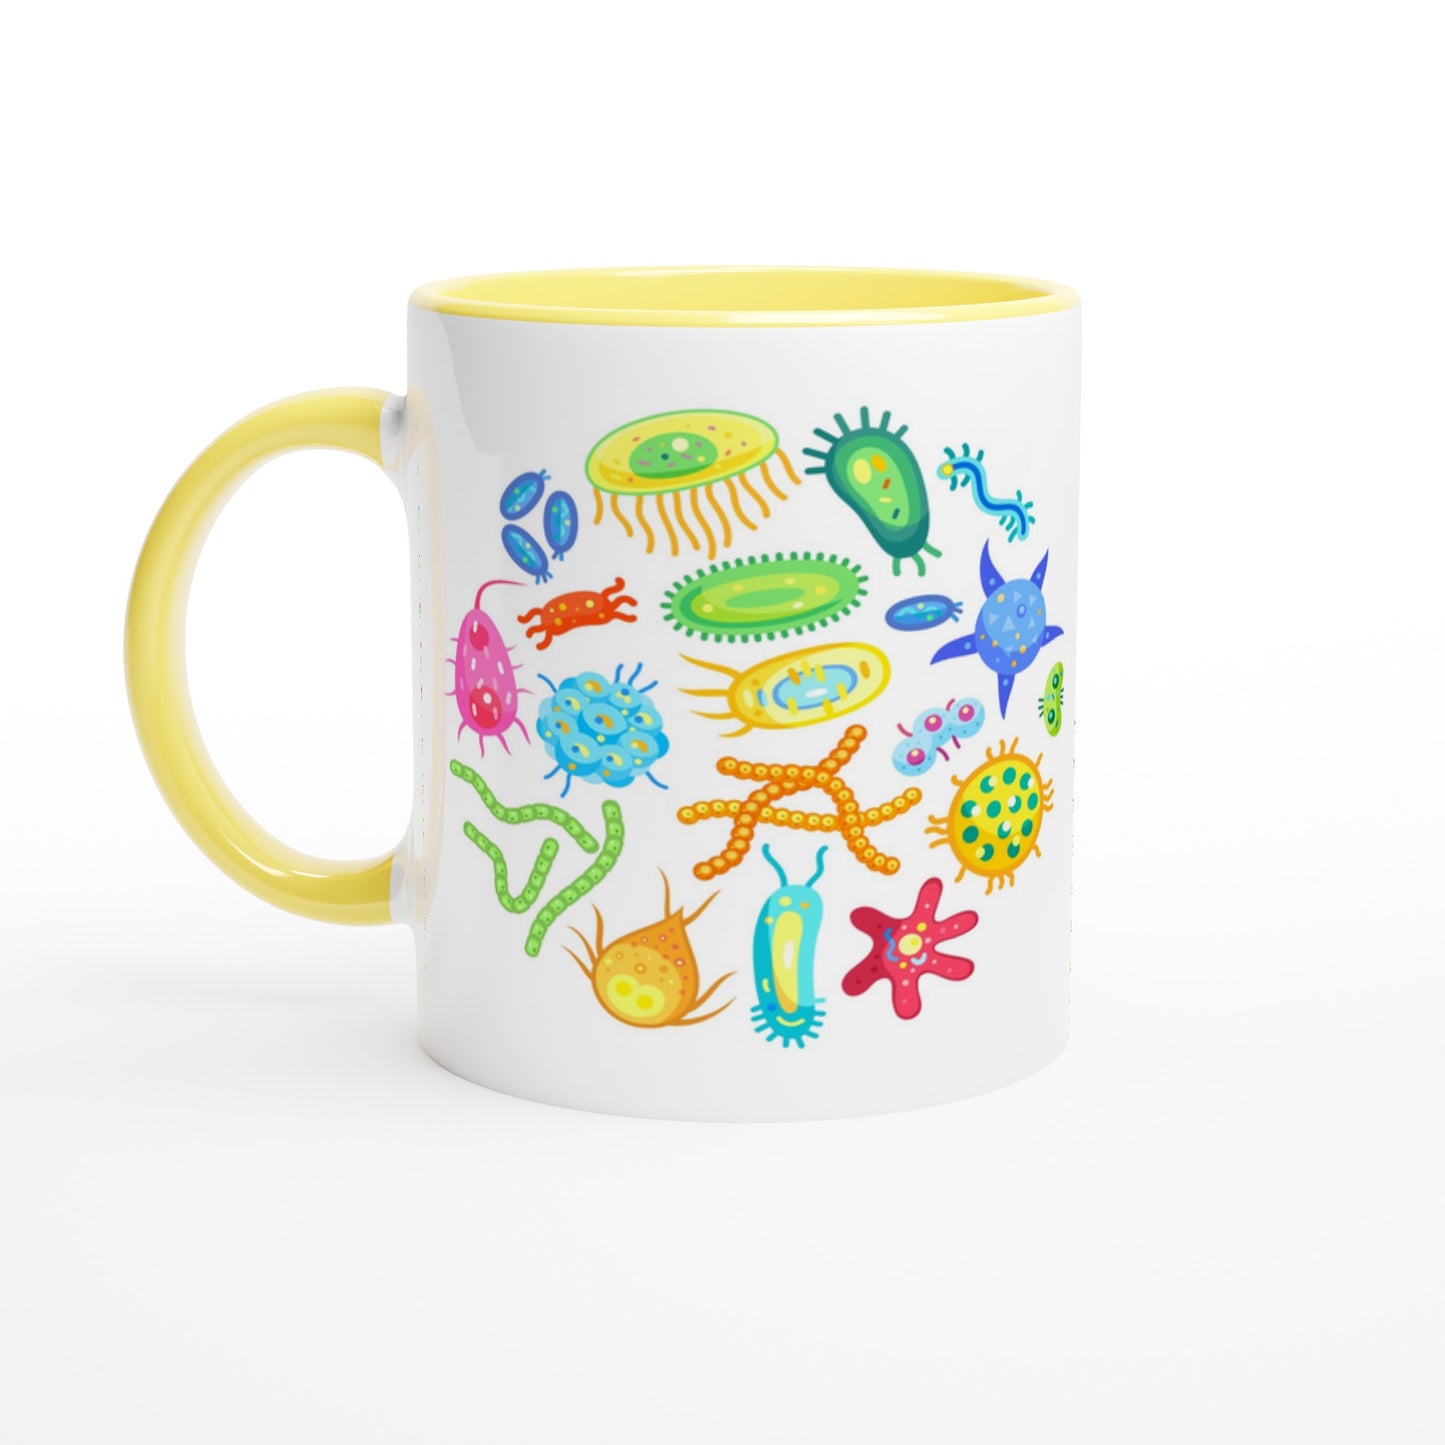 Under The Microscope - White 11oz Ceramic Mug with Colour Inside Ceramic Yellow Colour 11oz Mug Science